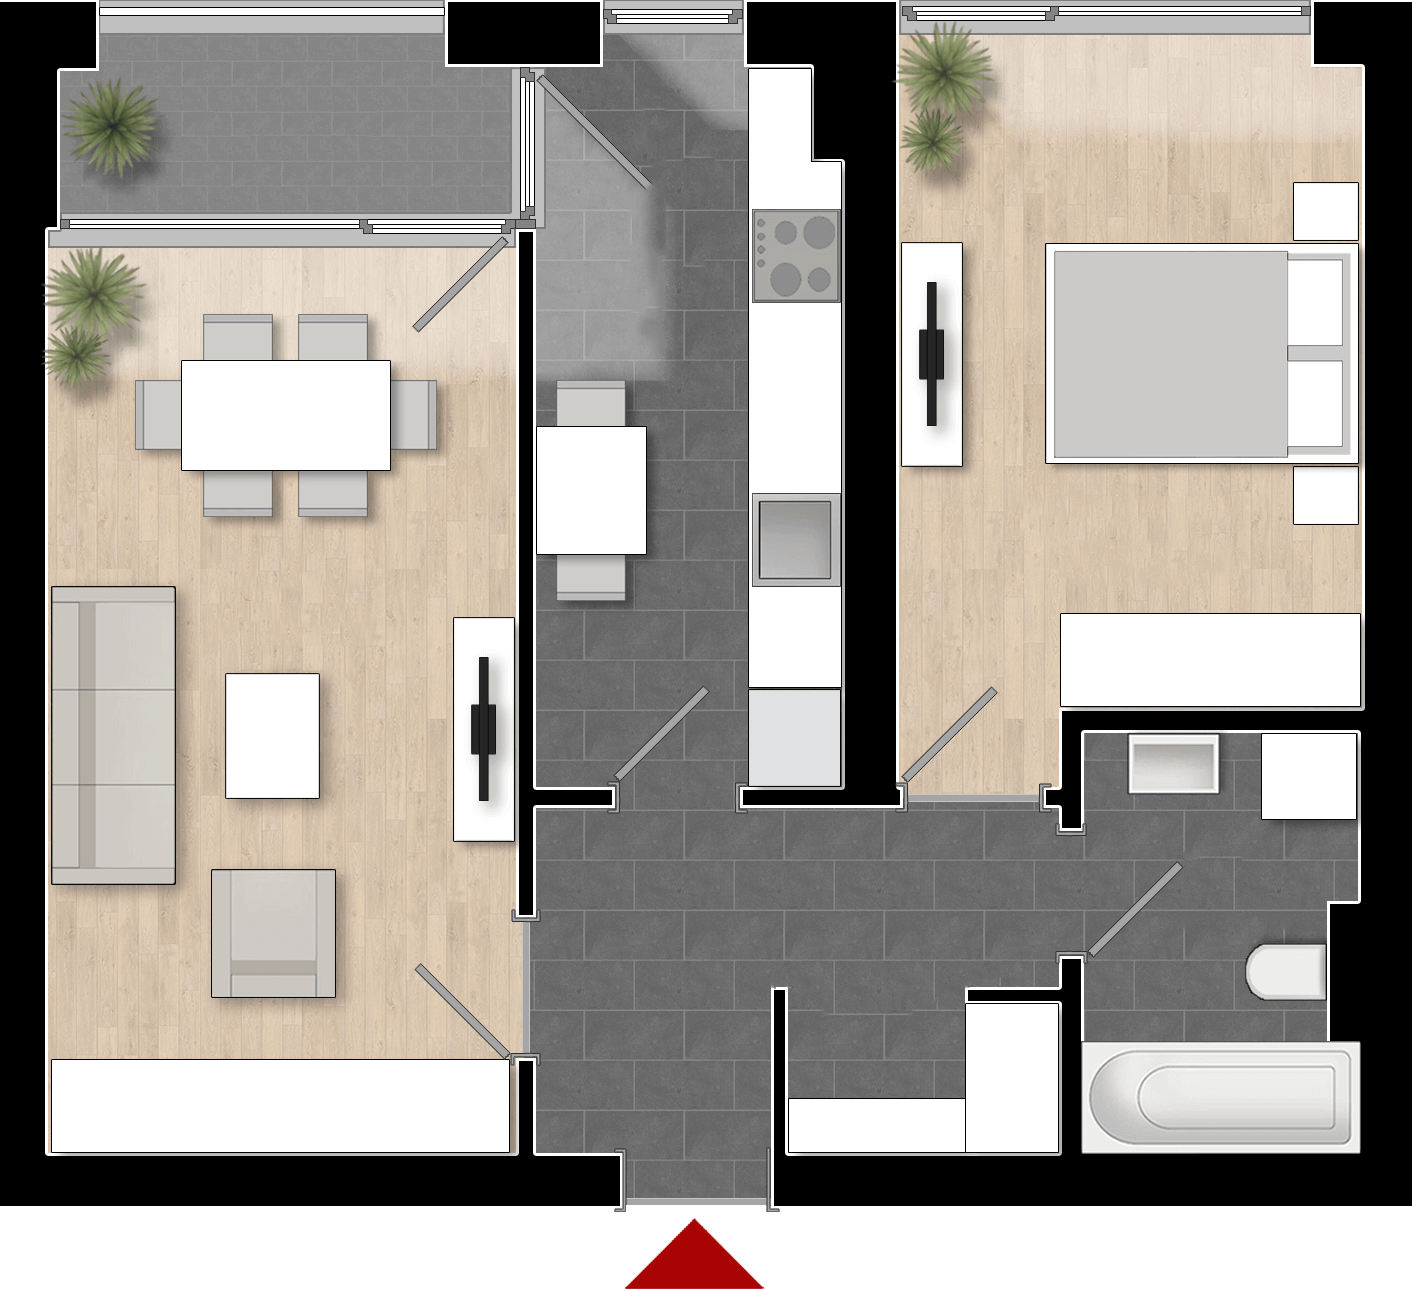  Apartament 605, Tip de apartament 2A cu 2 camere 